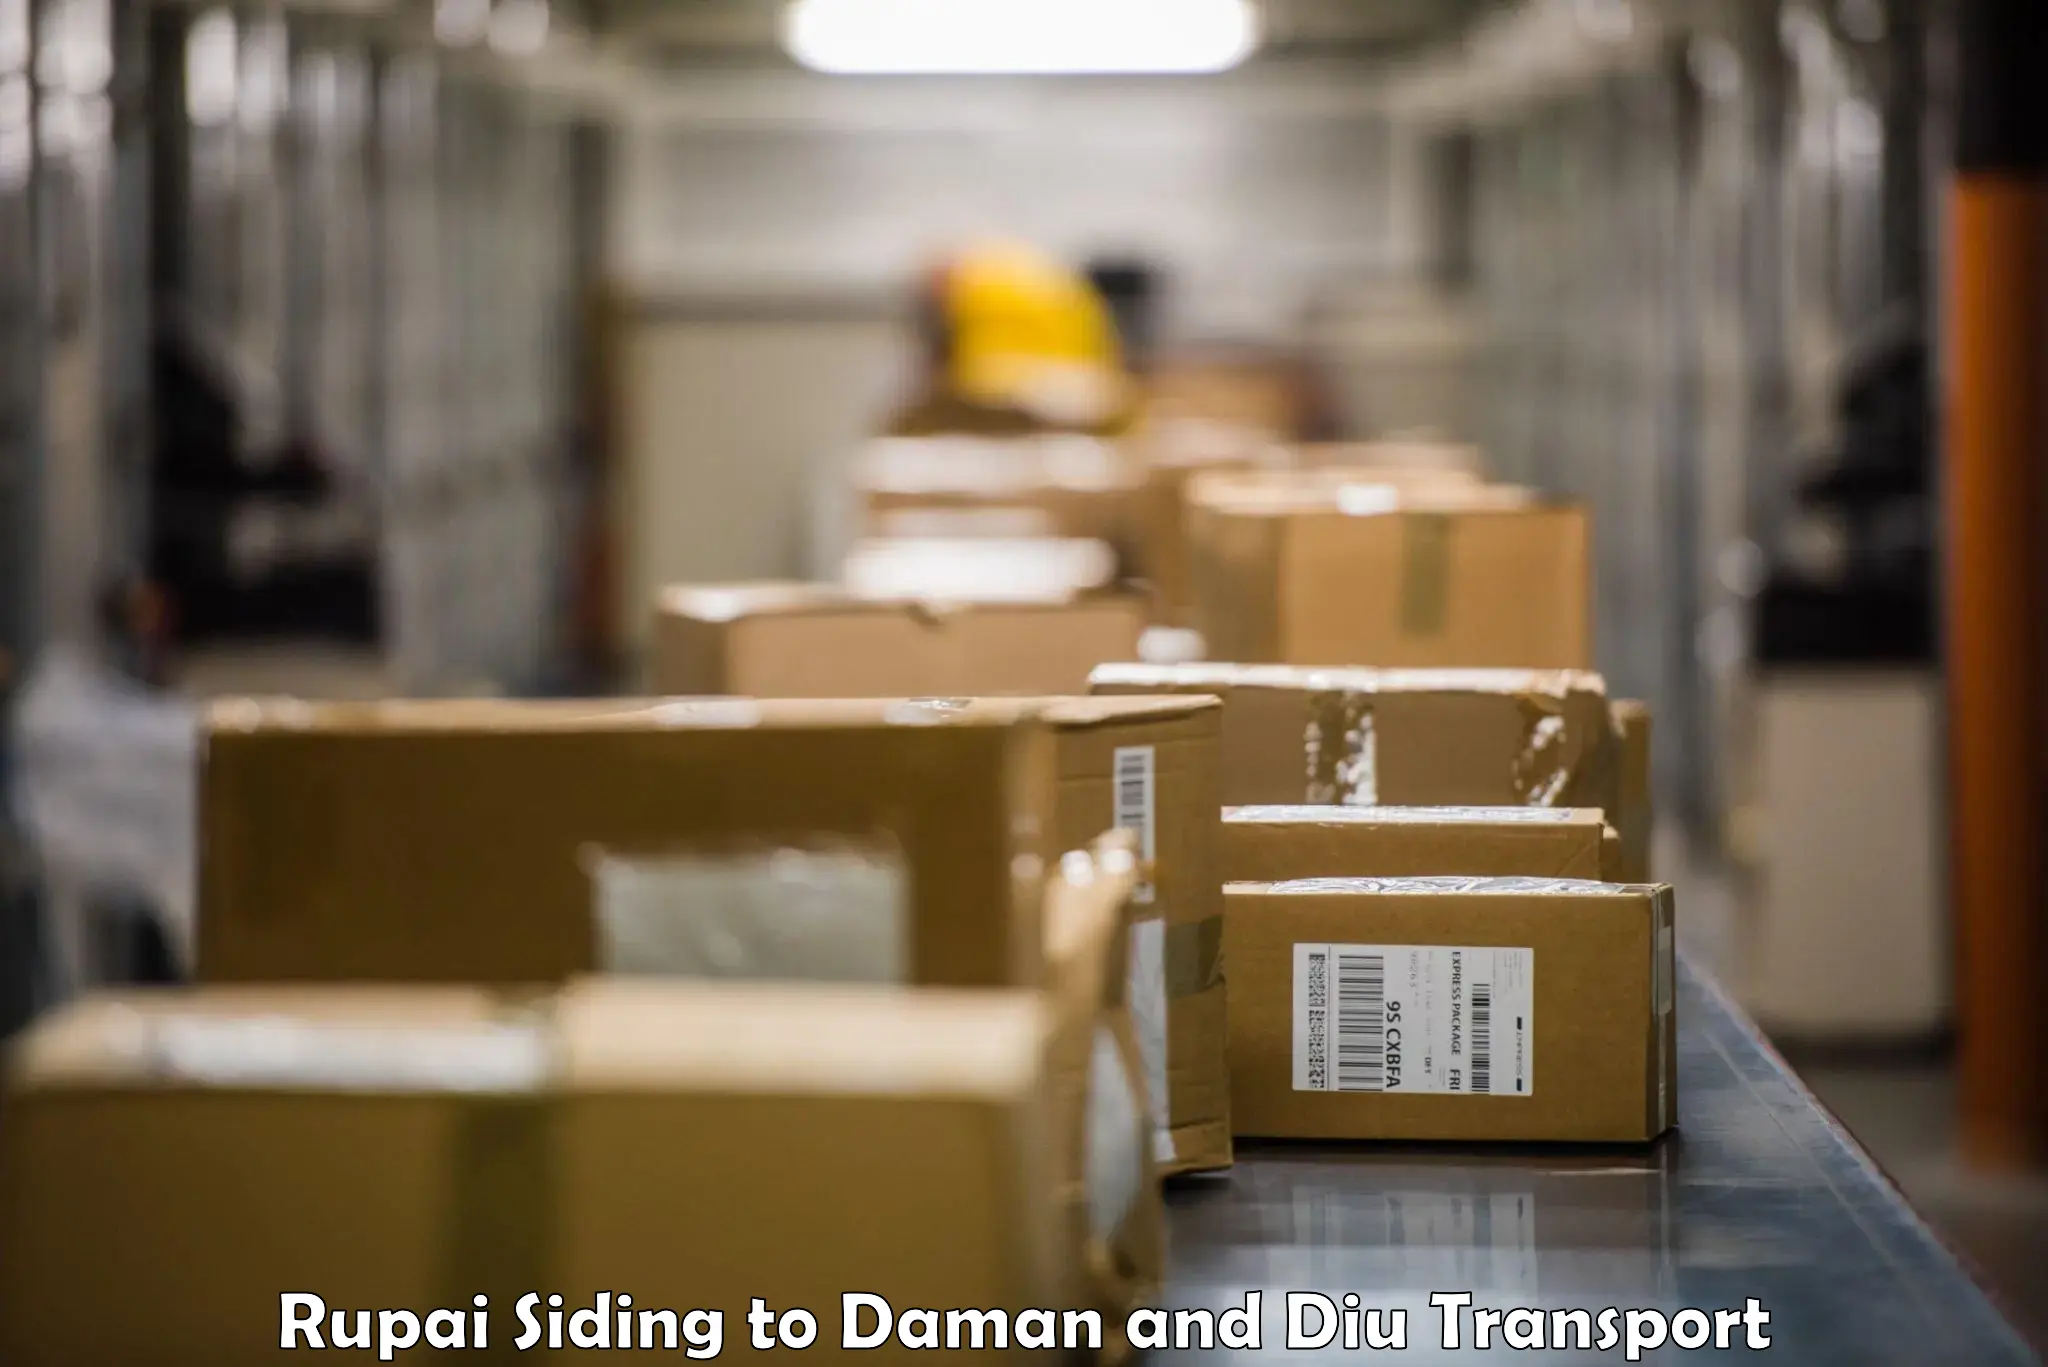 Furniture transport service in Rupai Siding to Diu